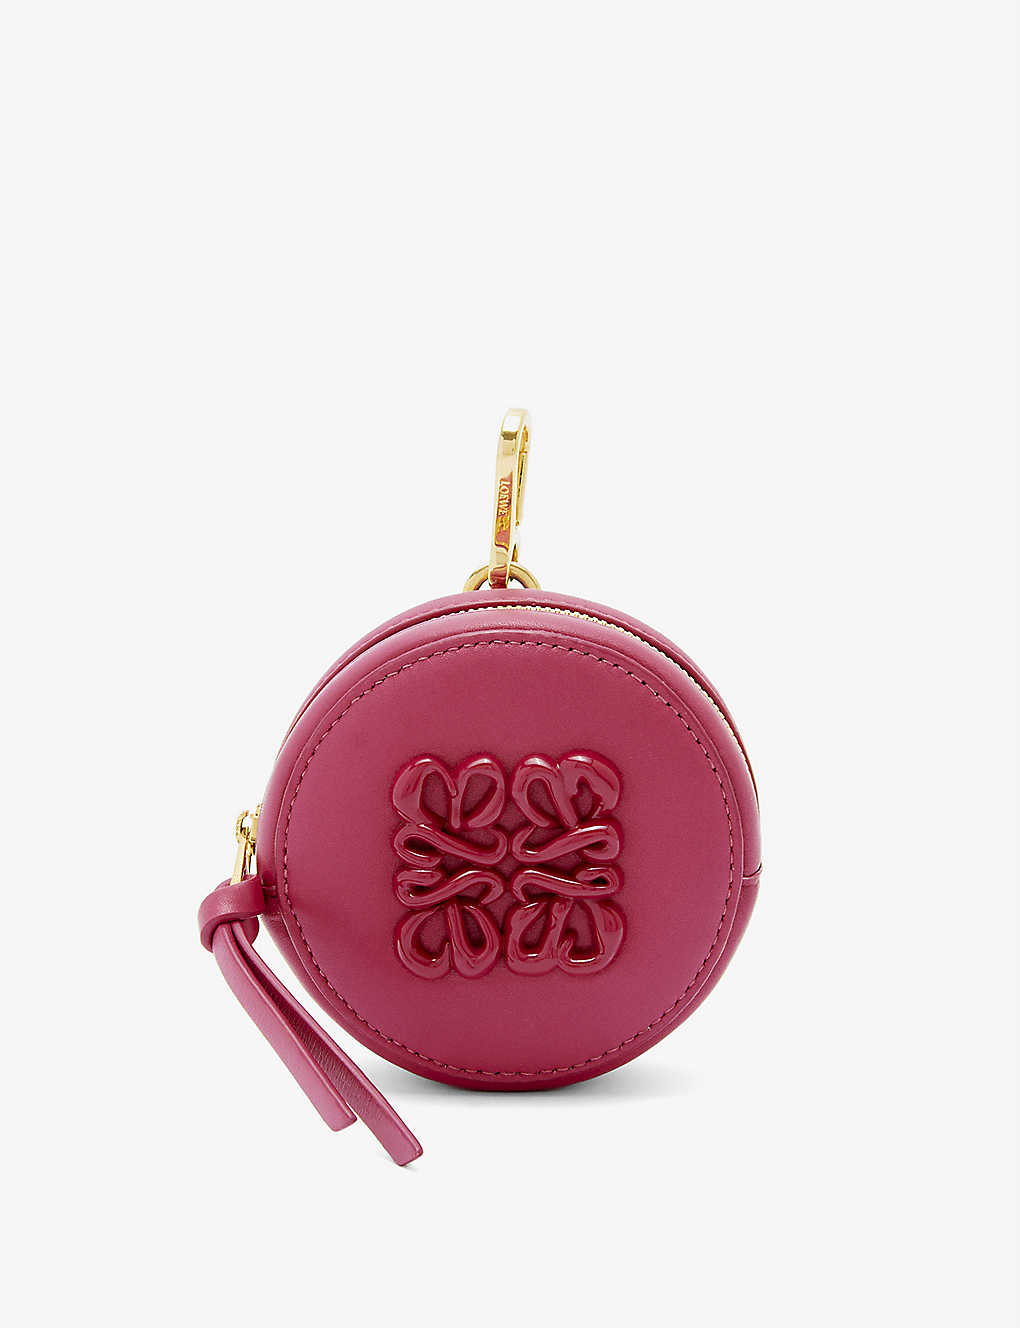 Loewe Ruby Red Glaze Cookie Monogram-debossed Leather Purse Charm